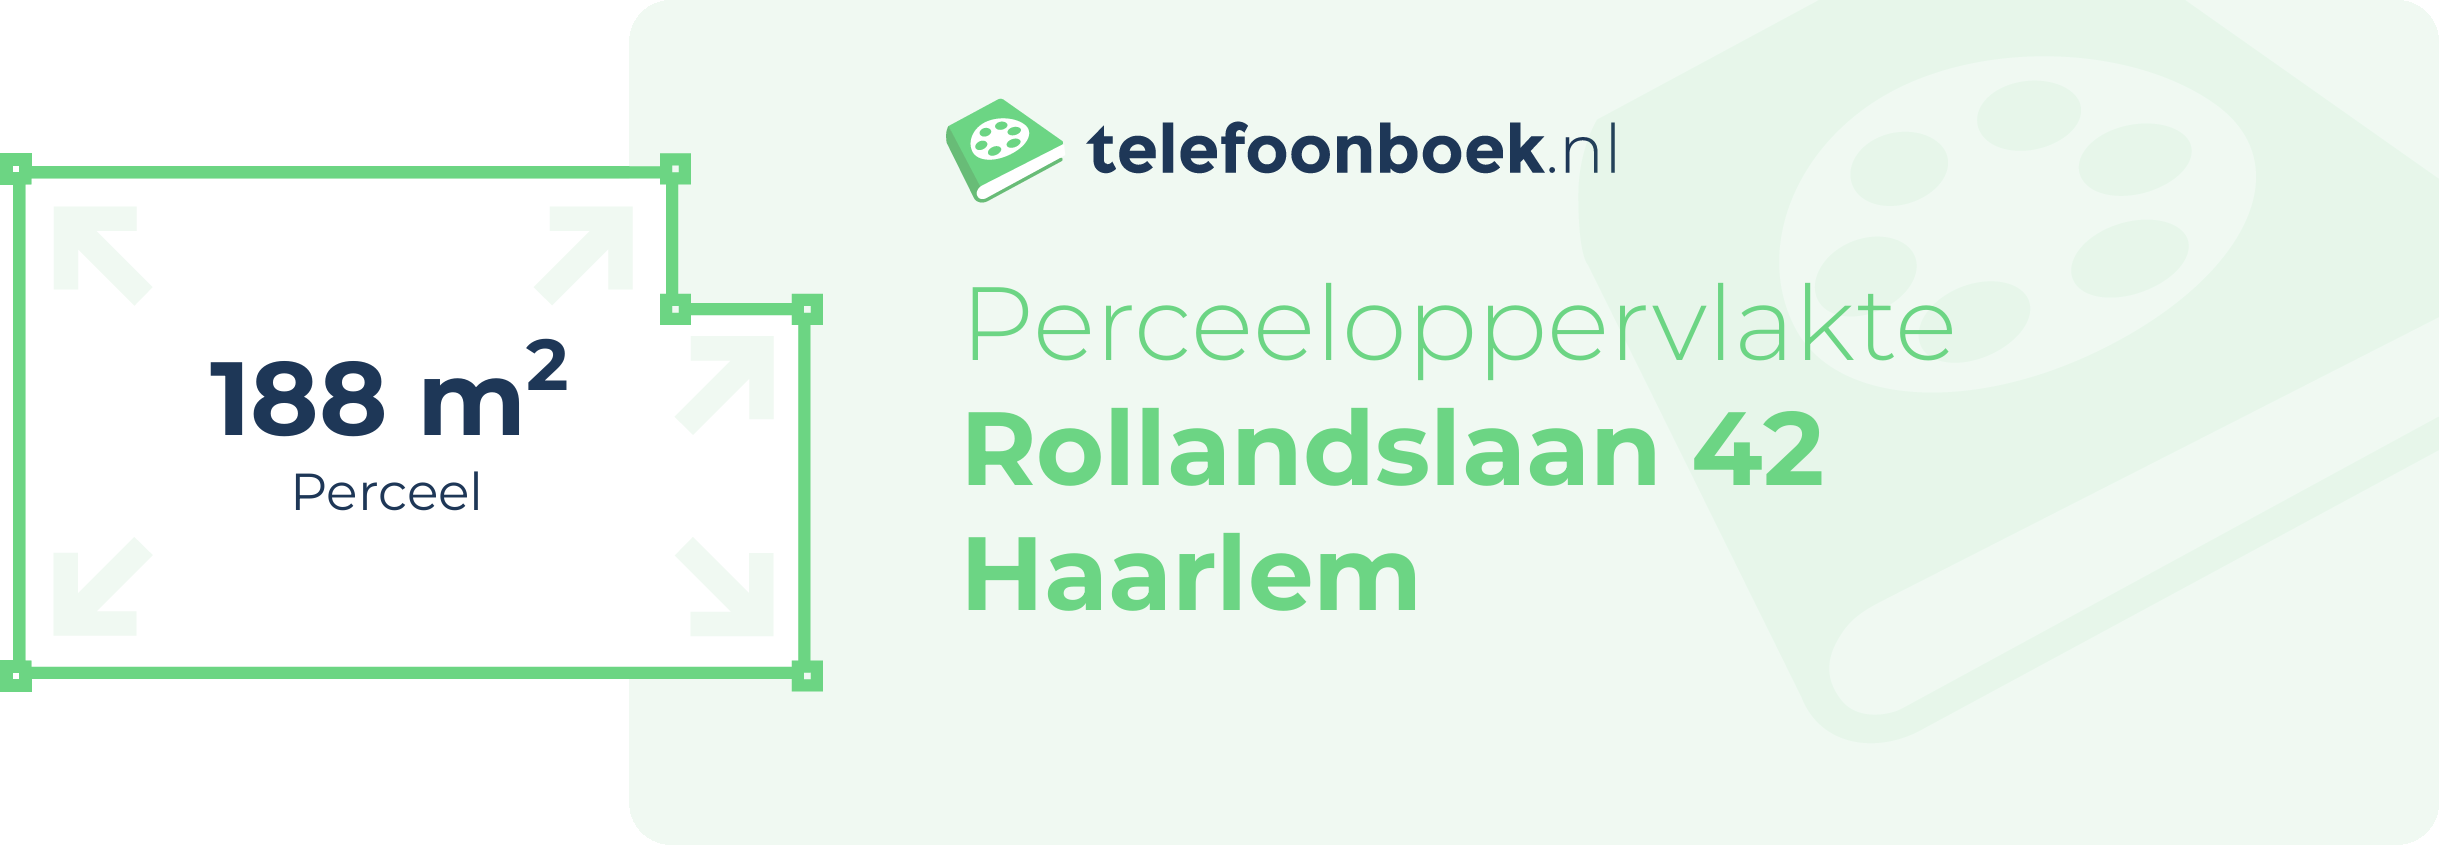 Perceeloppervlakte Rollandslaan 42 Haarlem